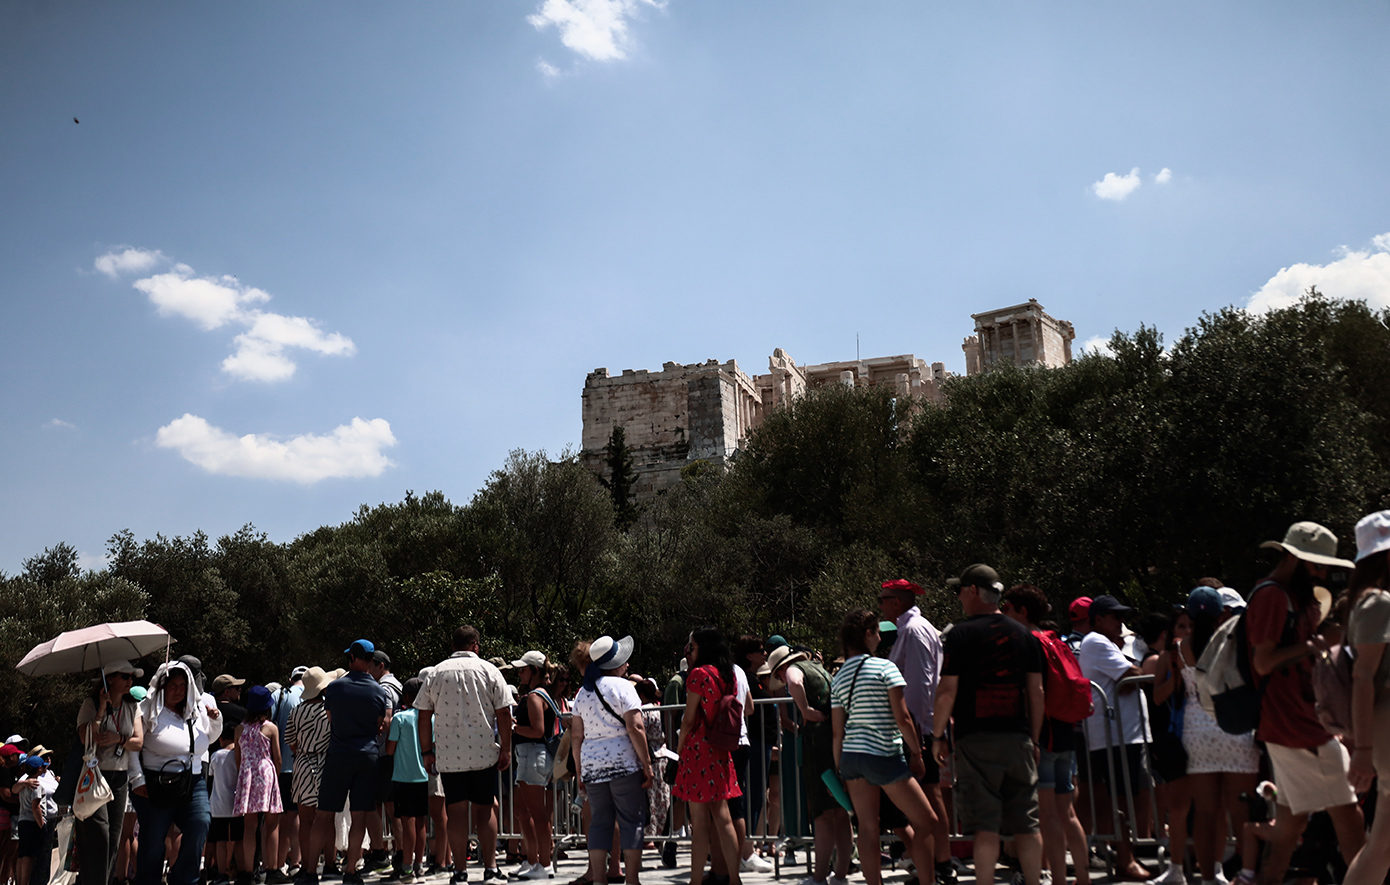 Η Ελλάδα πρωταγωνιστεί στους δημοφιλείς προορισμούς για τις μεγάλες ευρωπαϊκές αγορές, σύμφωνα με έρευνα του ΙΝΣΕΤΕ